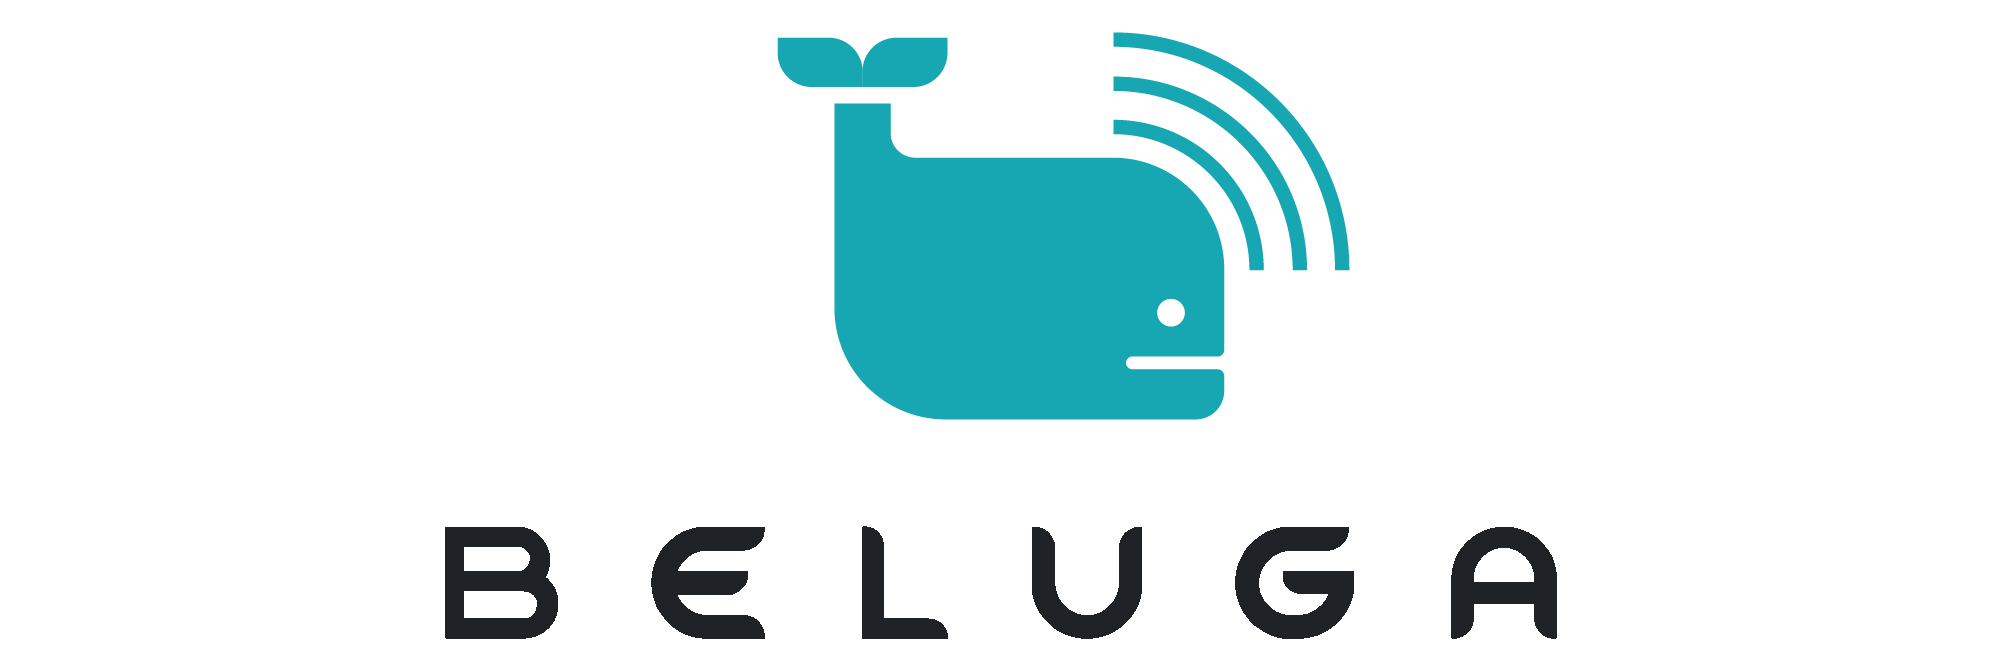 Shows Beluga logo.